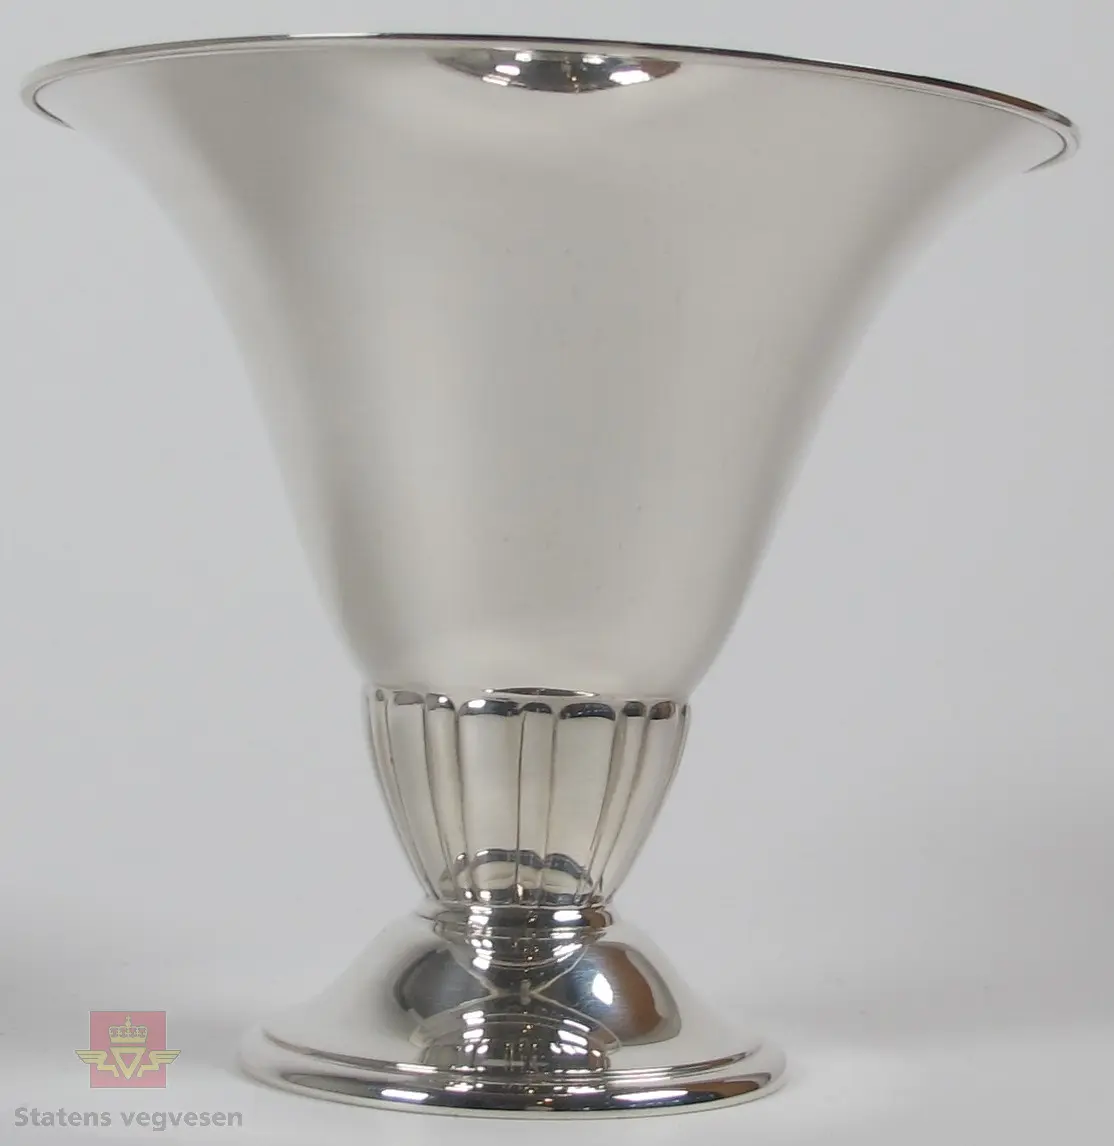 Pokal i sølv formet som en vase/beger.
